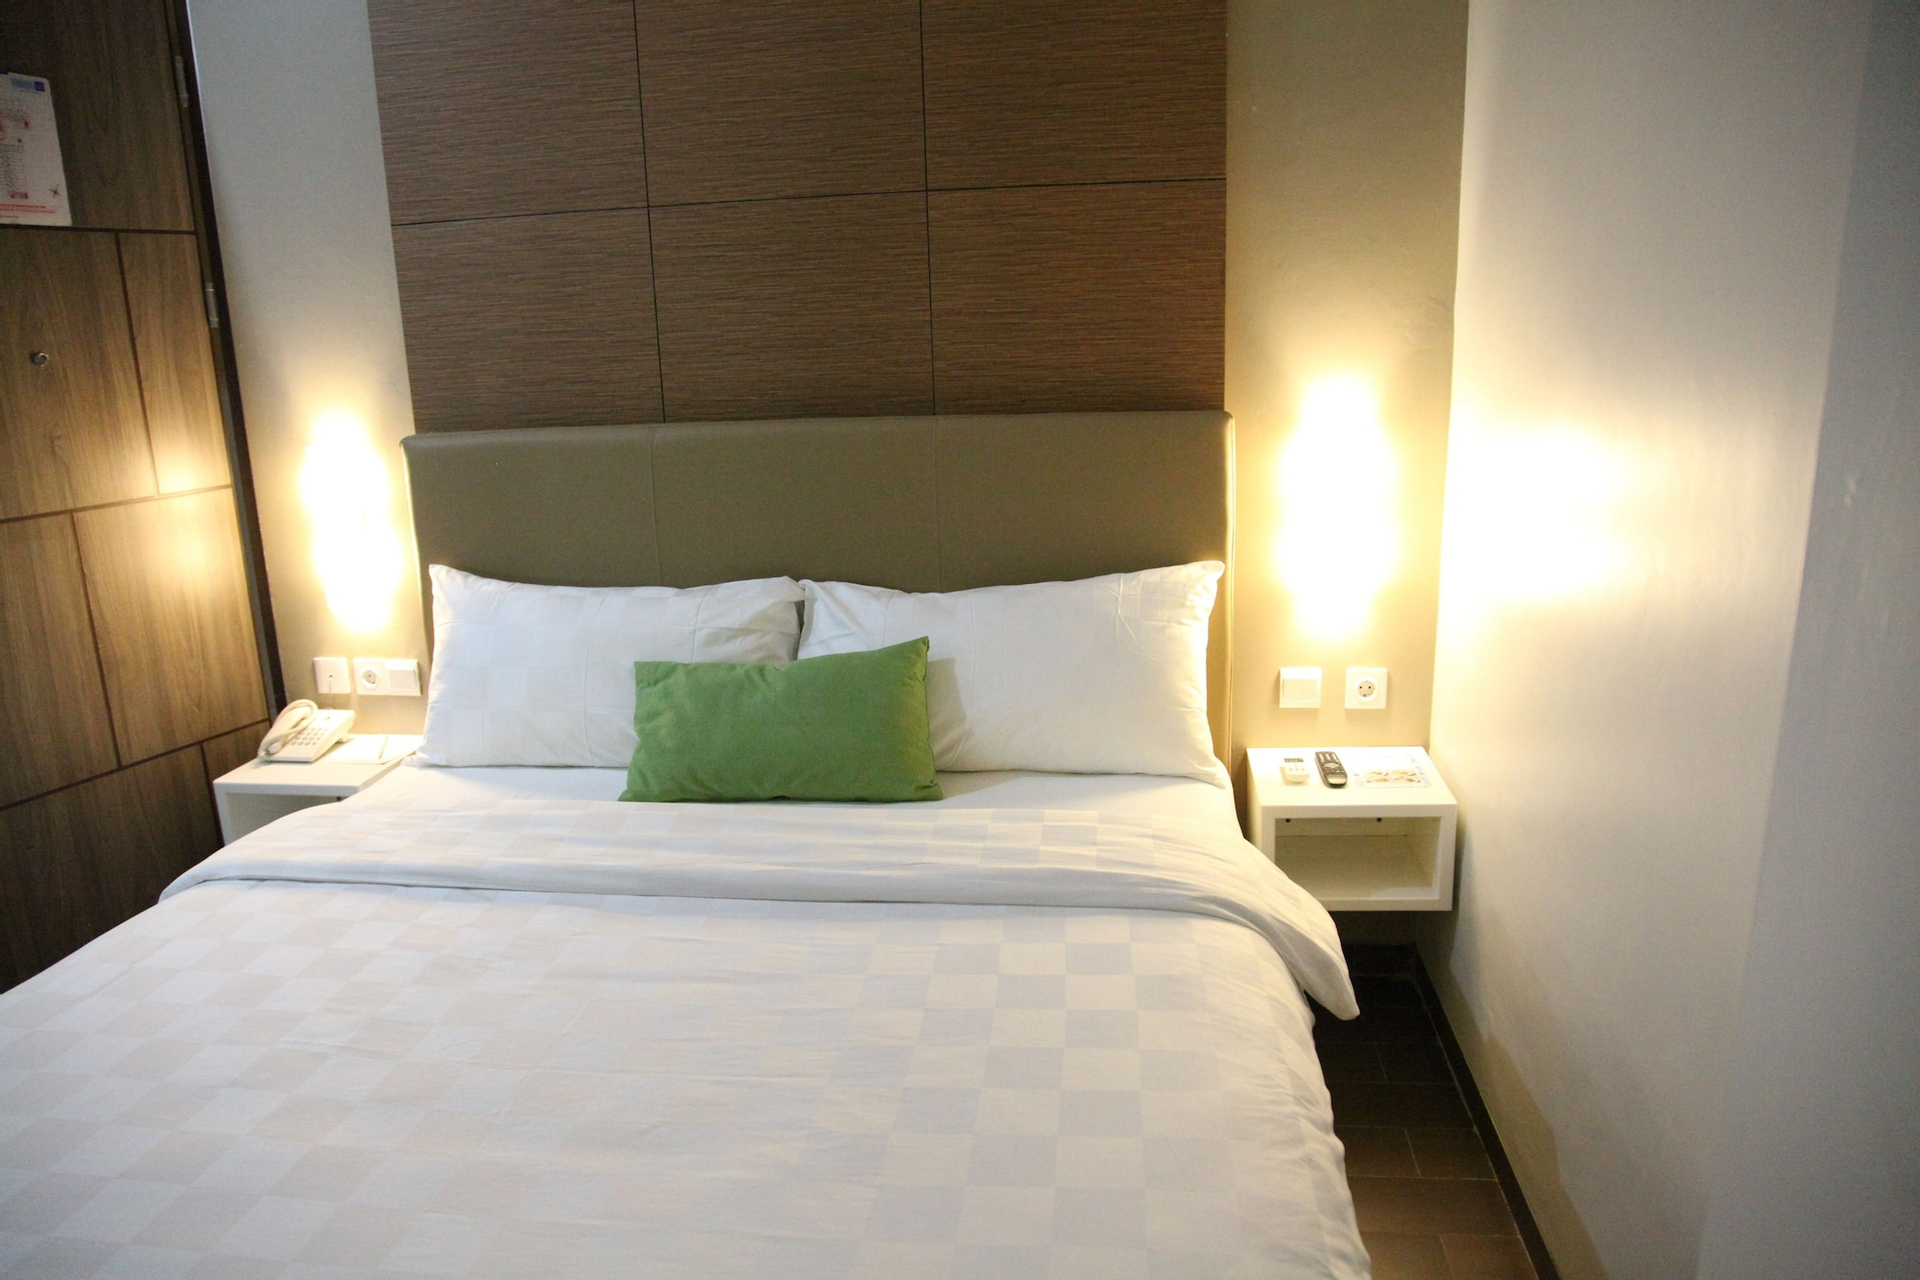 Bedroom 3, Terraz Tree Hotel Tendean, Jakarta Selatan